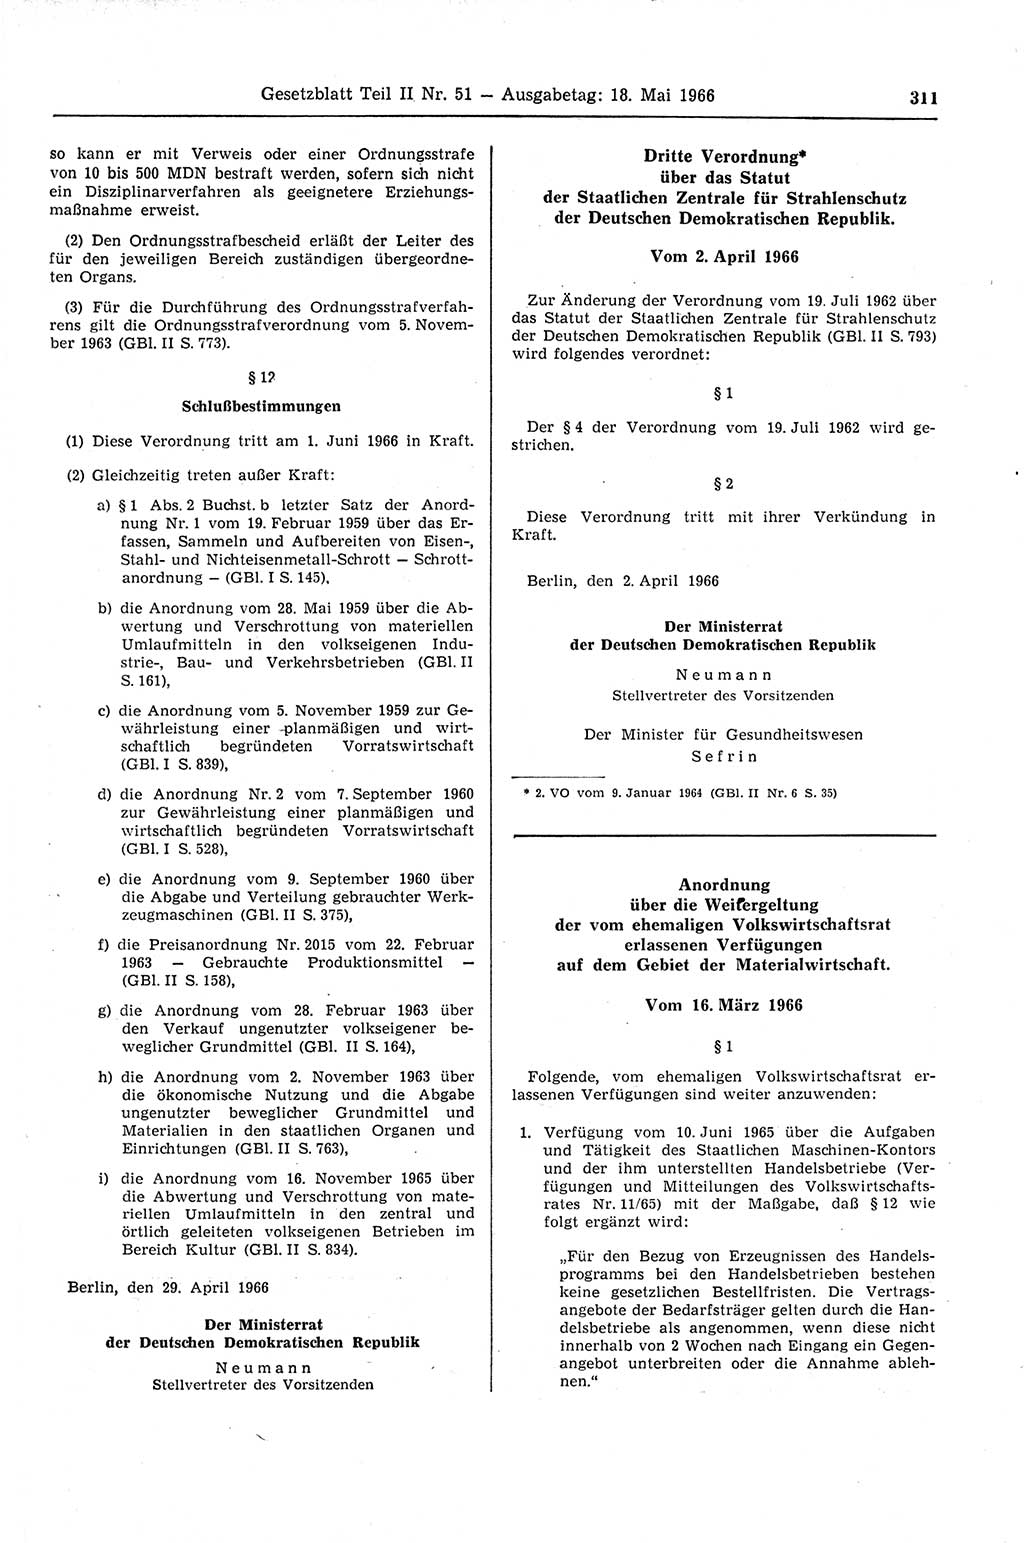 Gesetzblatt (GBl.) der Deutschen Demokratischen Republik (DDR) Teil ⅠⅠ 1966, Seite 311 (GBl. DDR ⅠⅠ 1966, S. 311)